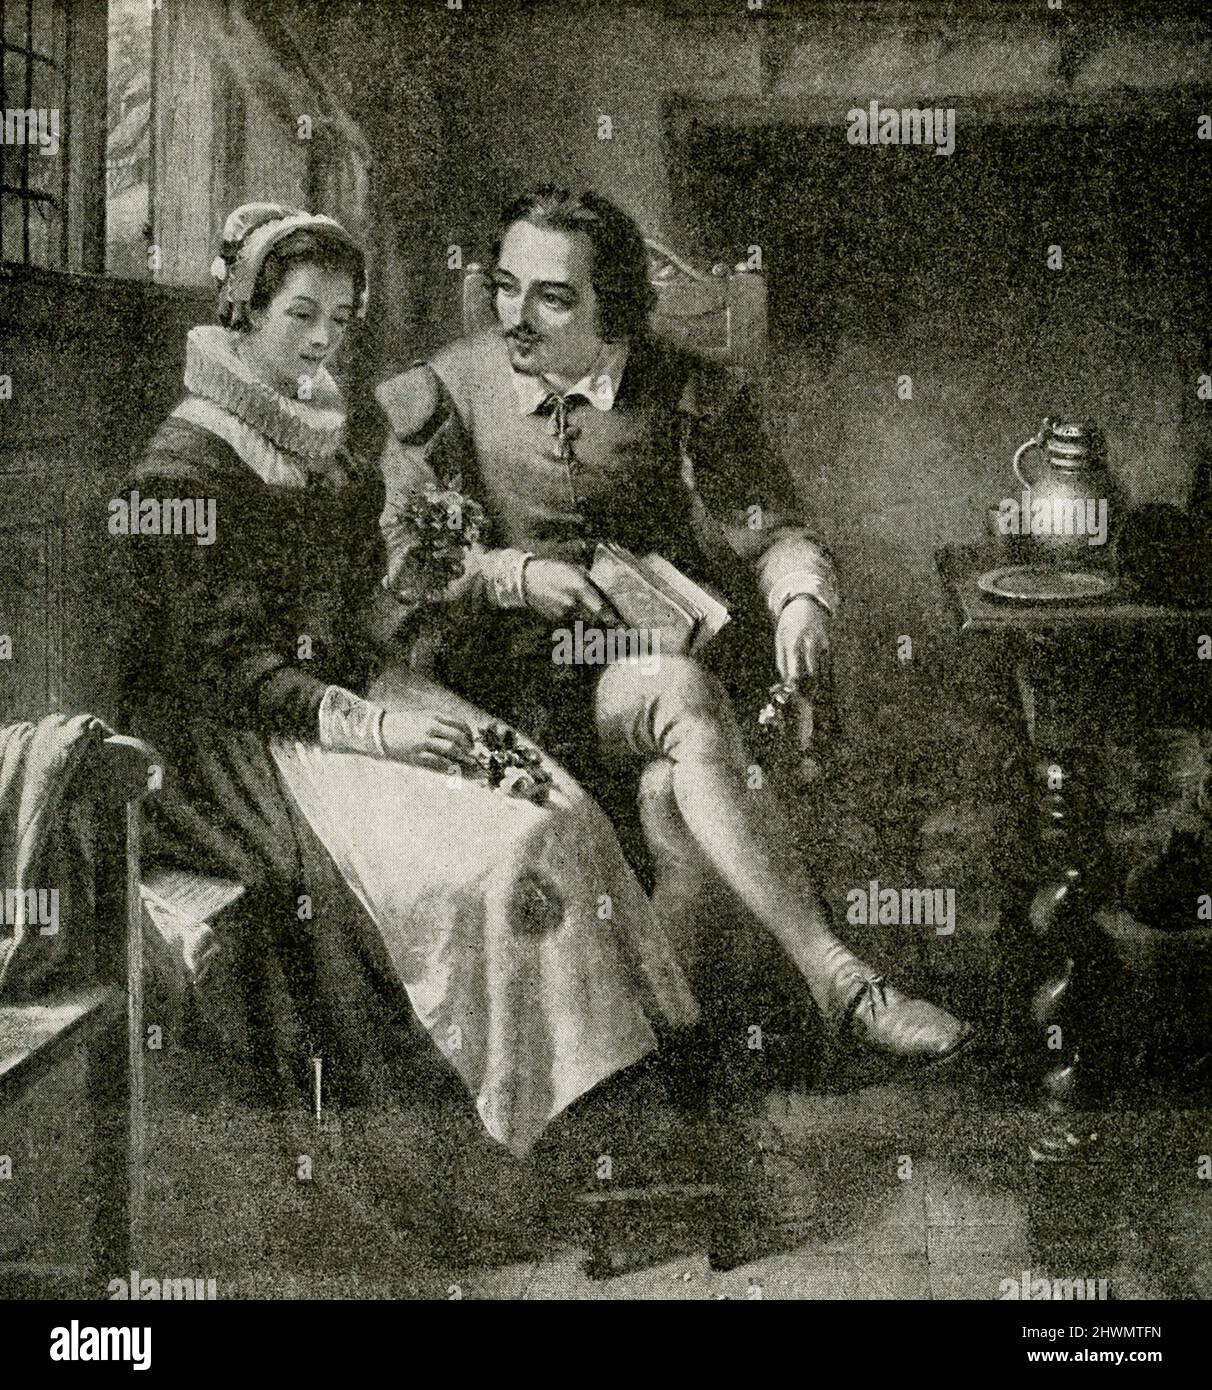 La légende 1912 de cette image est la suivante : 'Shavespeare at 19 ans in Anne Hathaway's Cottage at Stratford - Cottage of Anne Hathaway'. La légende de 1912 de cette illustration se lit comme suit : William Shakespeare (mort en 1616) était un dramaturge, poète et acteur anglais, largement considéré comme le plus grand écrivain de langue anglaise et le plus grand dramaturge du monde. Il est souvent appelé le poète national d'Angleterre et le « Bard d'Avon ». Anne Hathaway (décédée en 1623) était la femme de Shakespeare. Ils se sont mariés en 1582, quand Hathaway avait 26 ans et Shakespeare avait 18 ans. Banque D'Images